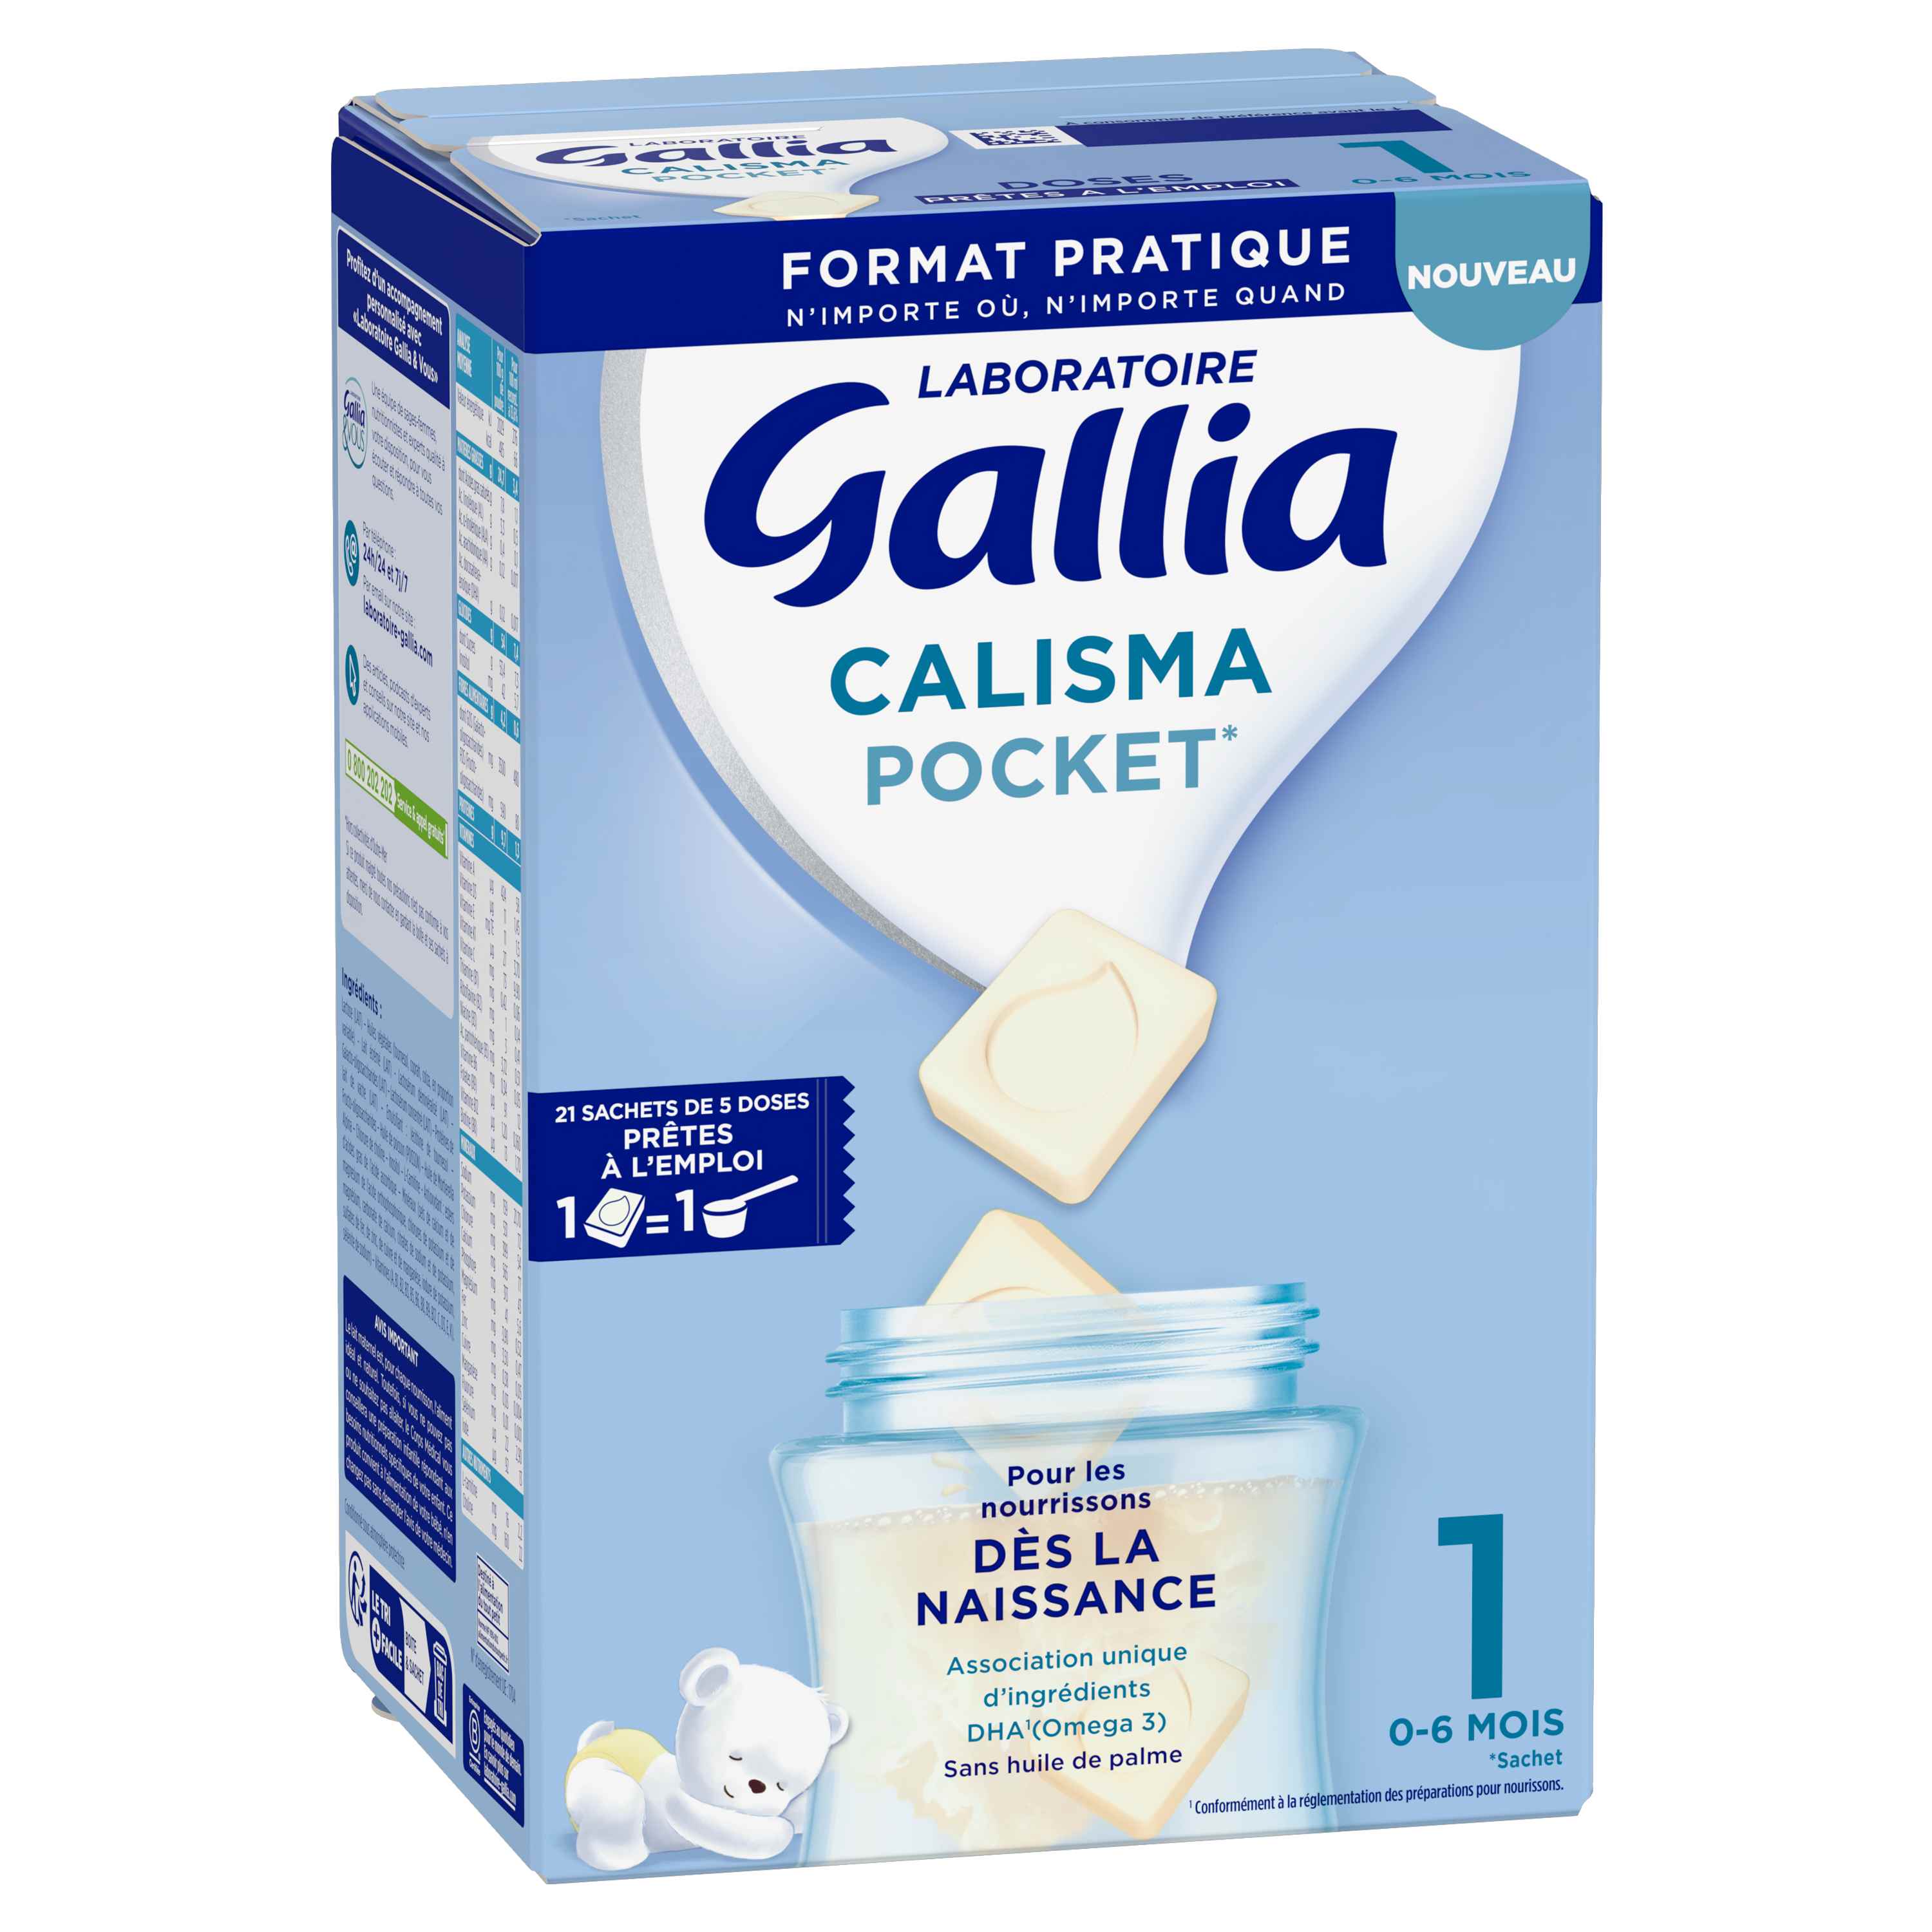 Calisma relais 1er âge 0-6 mois 400g est un lait infantile